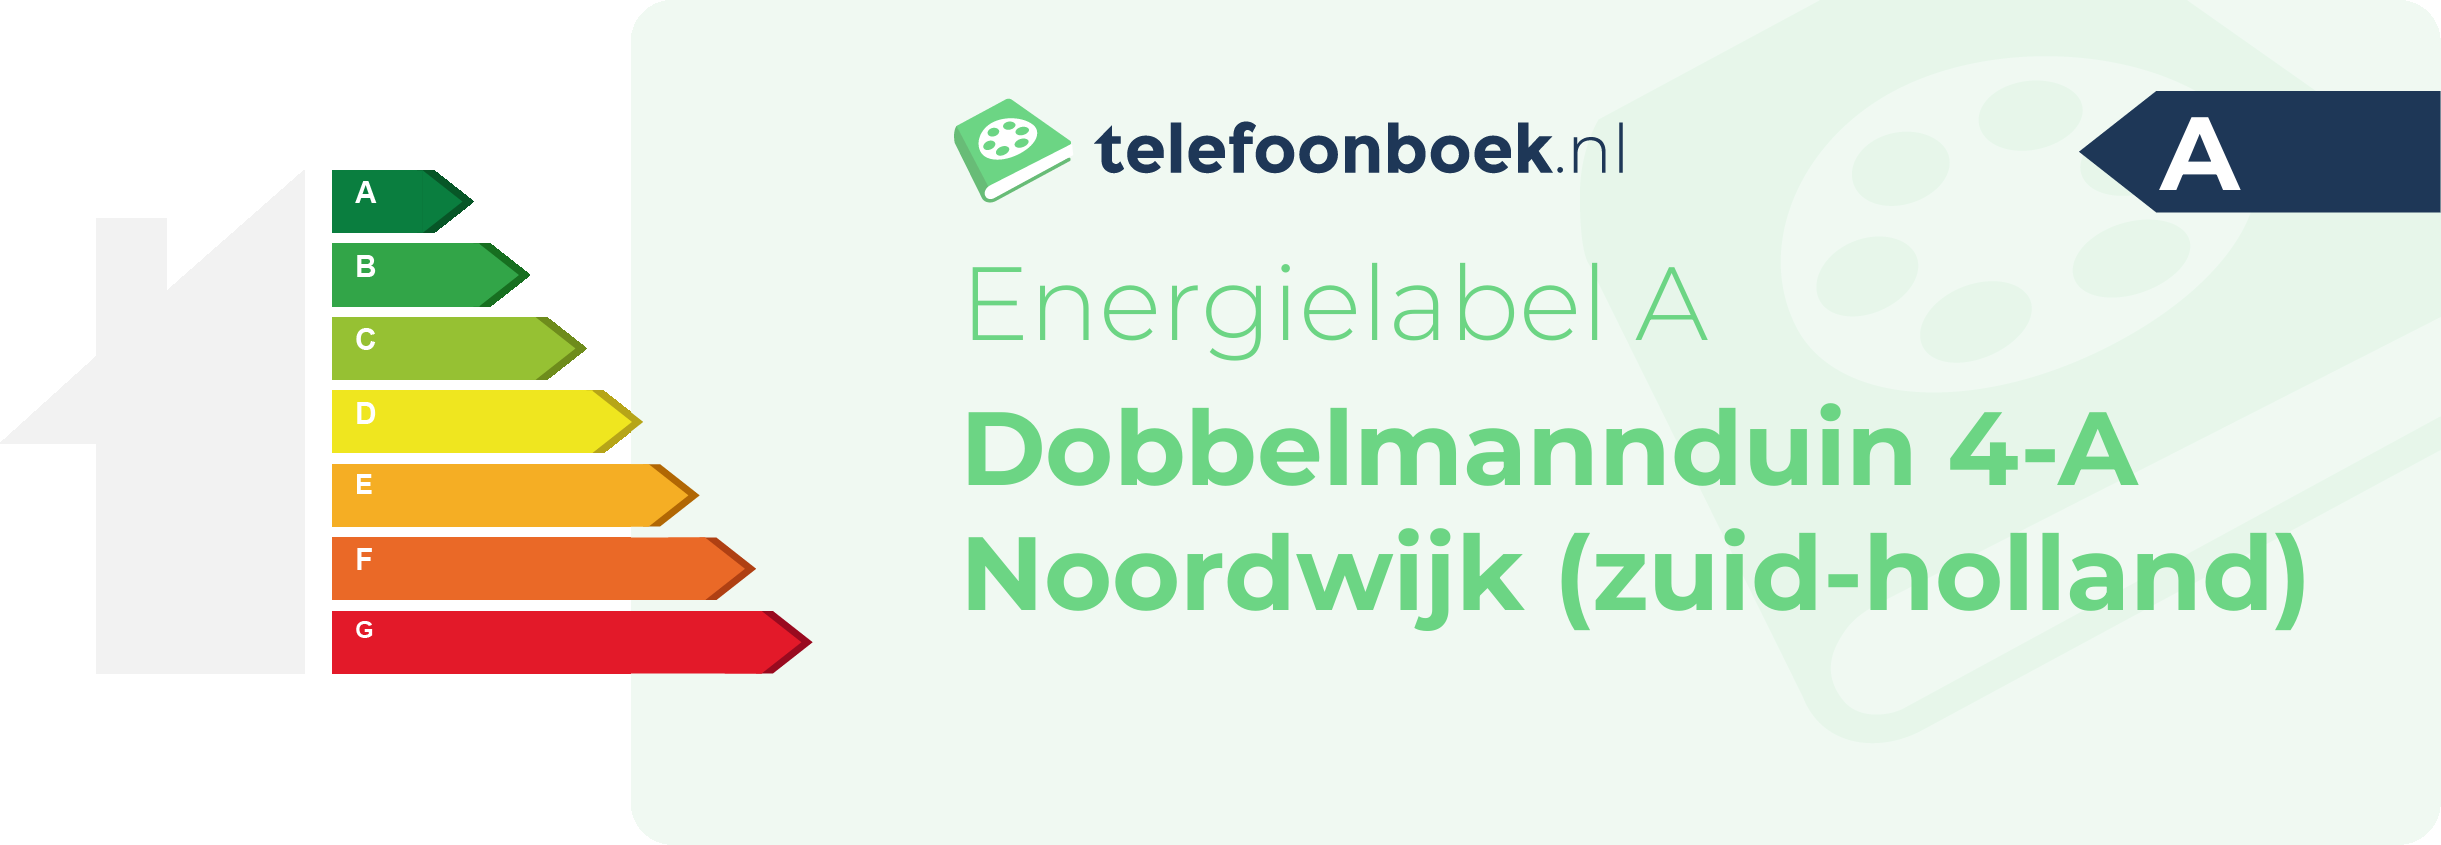 Energielabel Dobbelmannduin 4-A Noordwijk (Zuid-Holland)